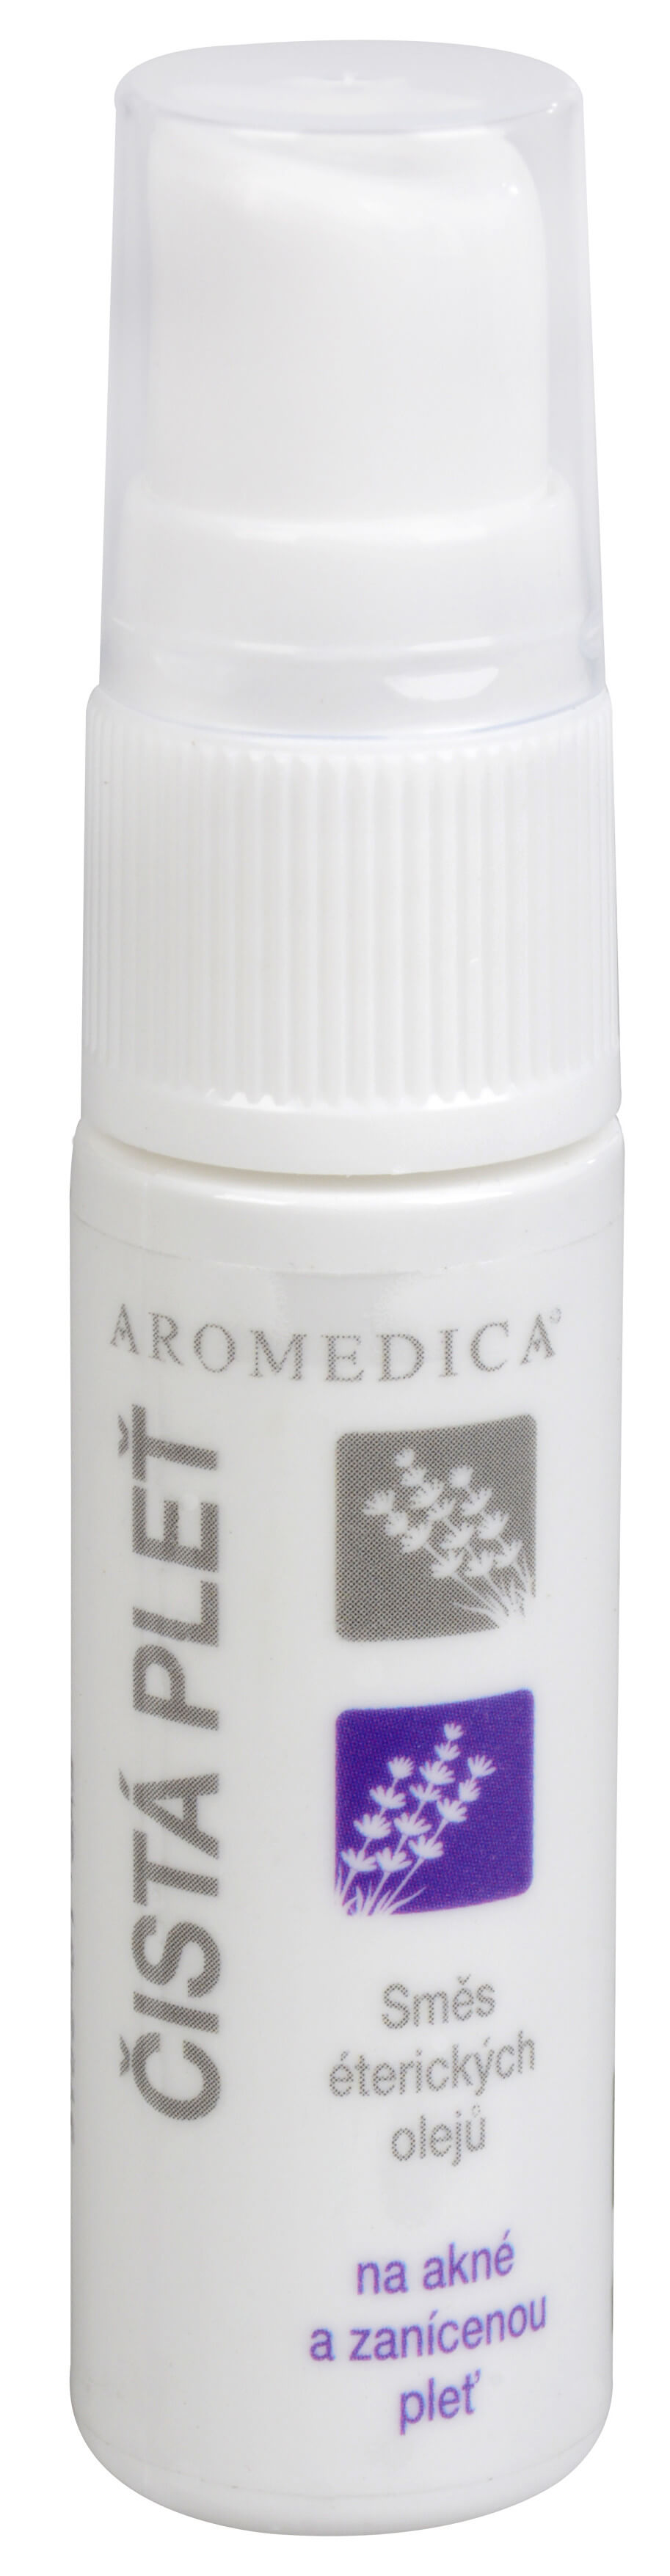 Zobrazit detail výrobku Aromedica Čistá pleť - směs éterických olejů na akné a zanícenou pleť 10 ml